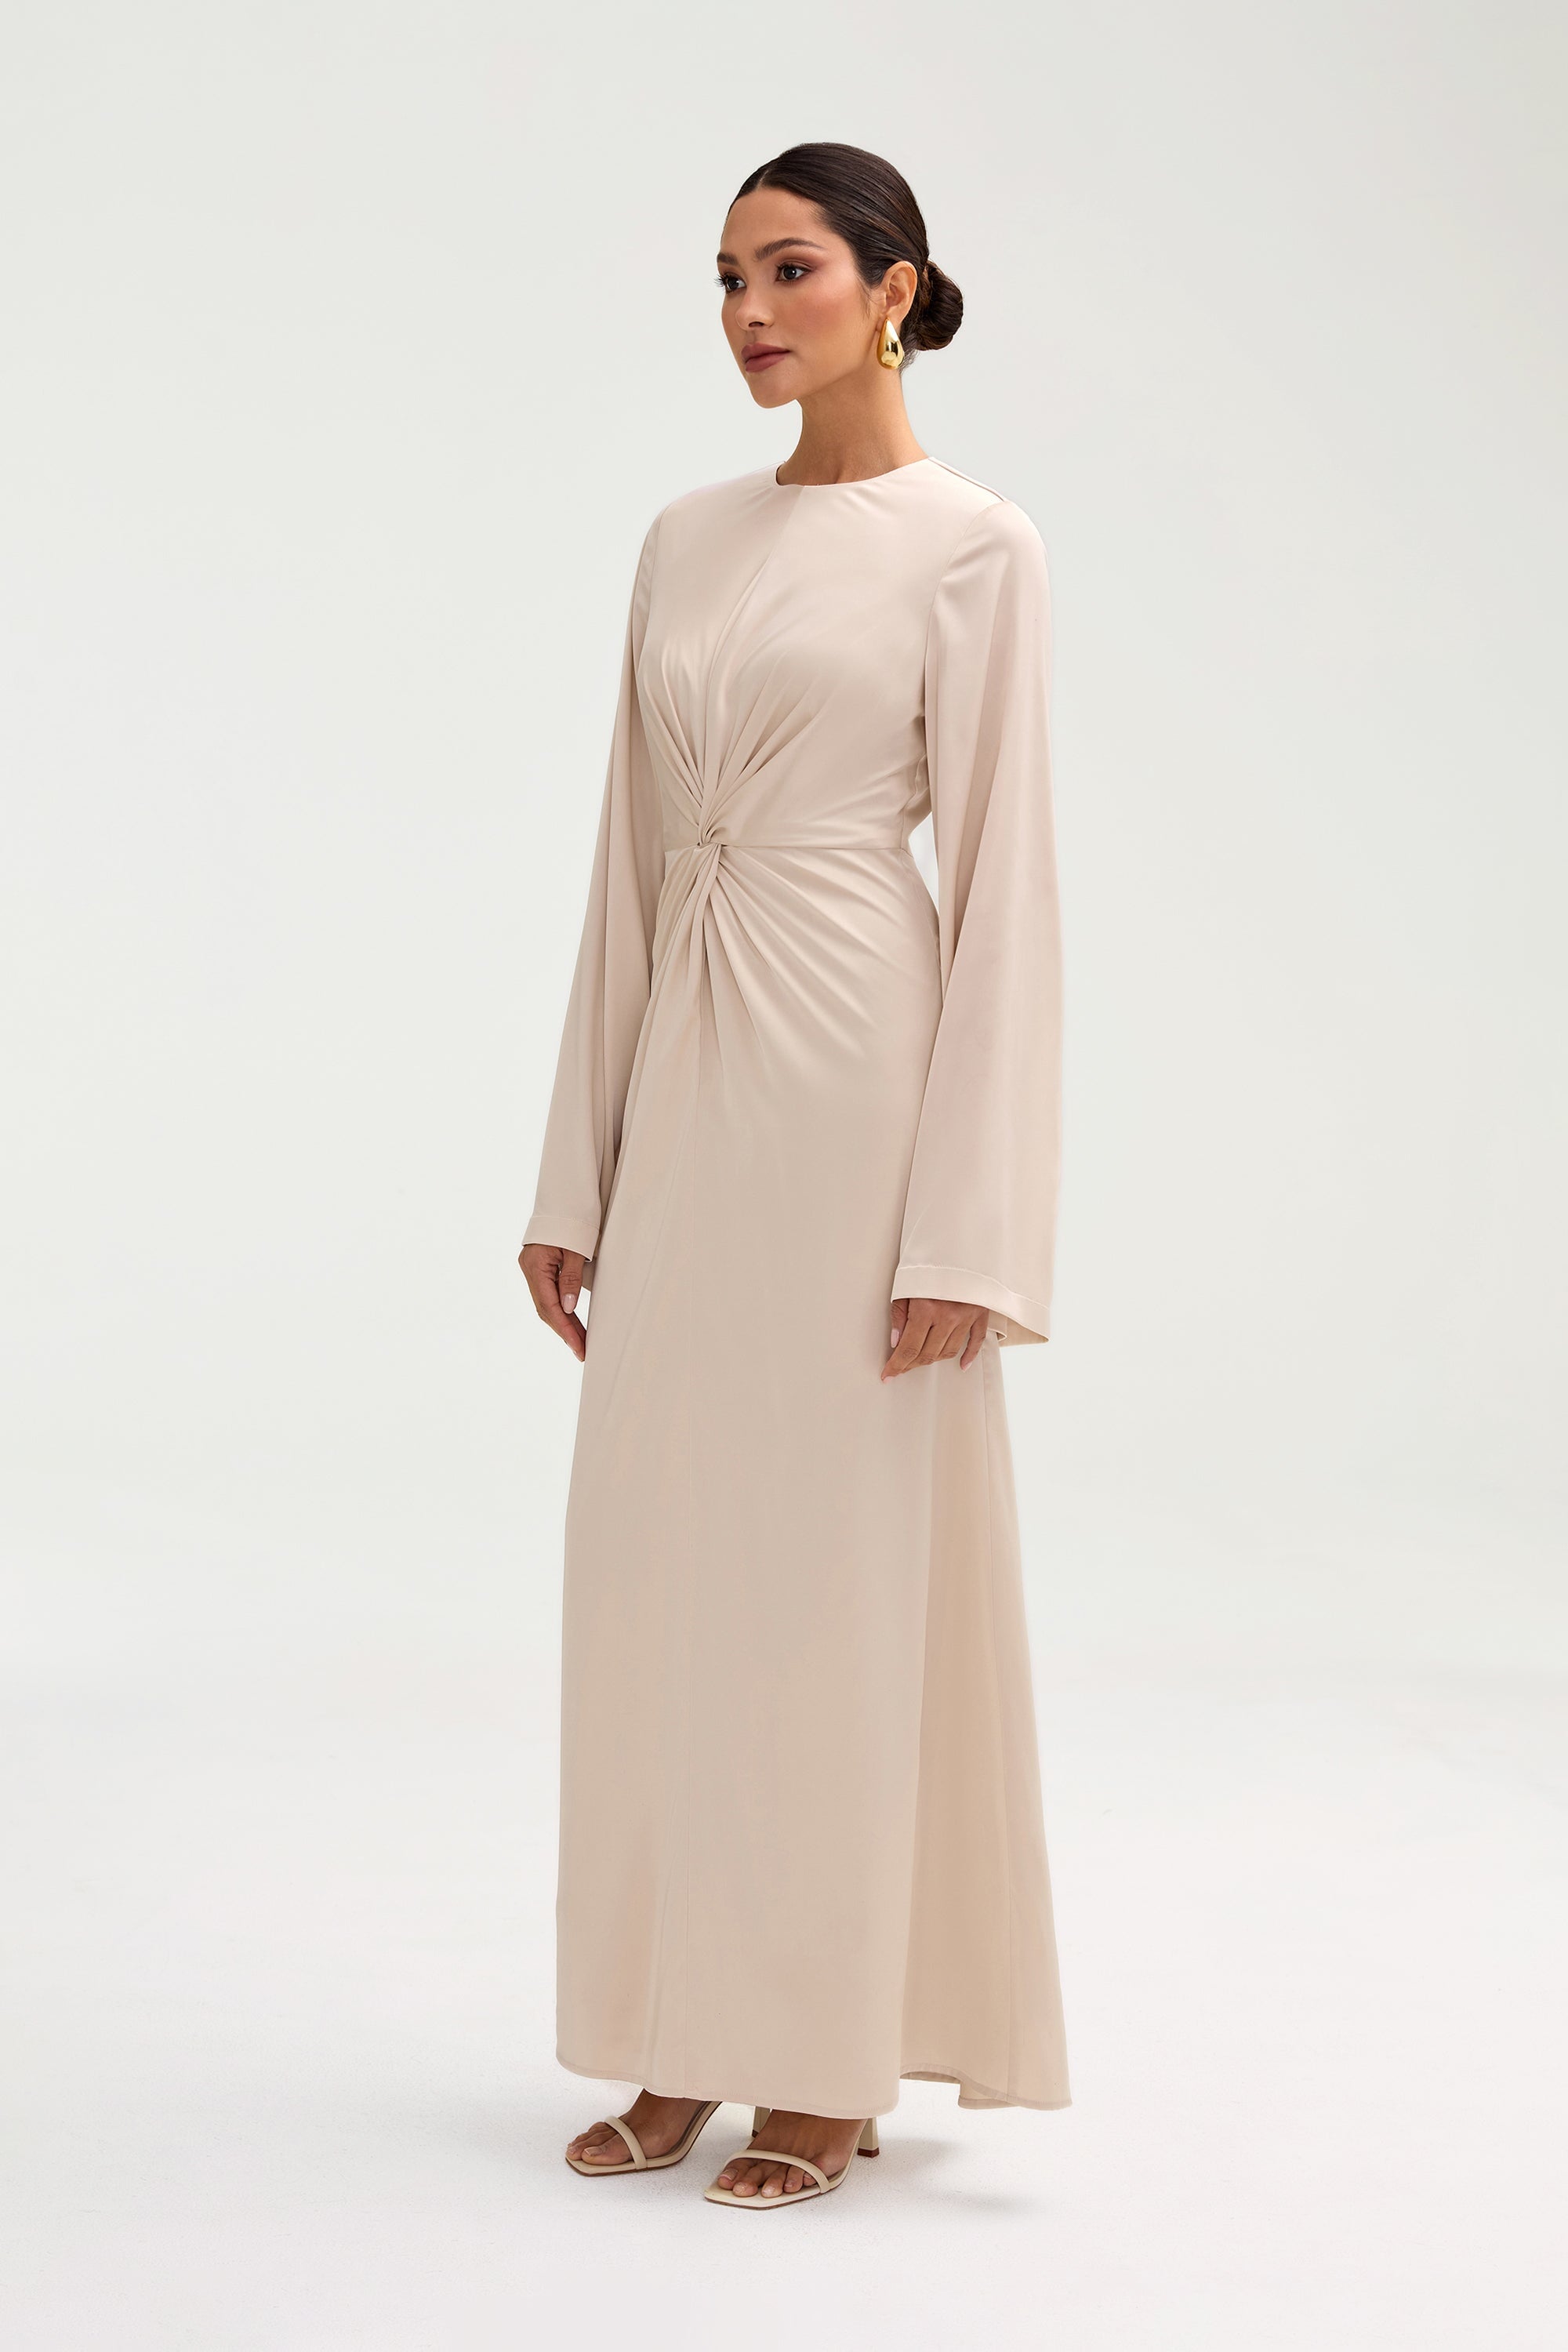 Duha Satin Twist Front Maxi Dress - Cloud Clothing Veiled 